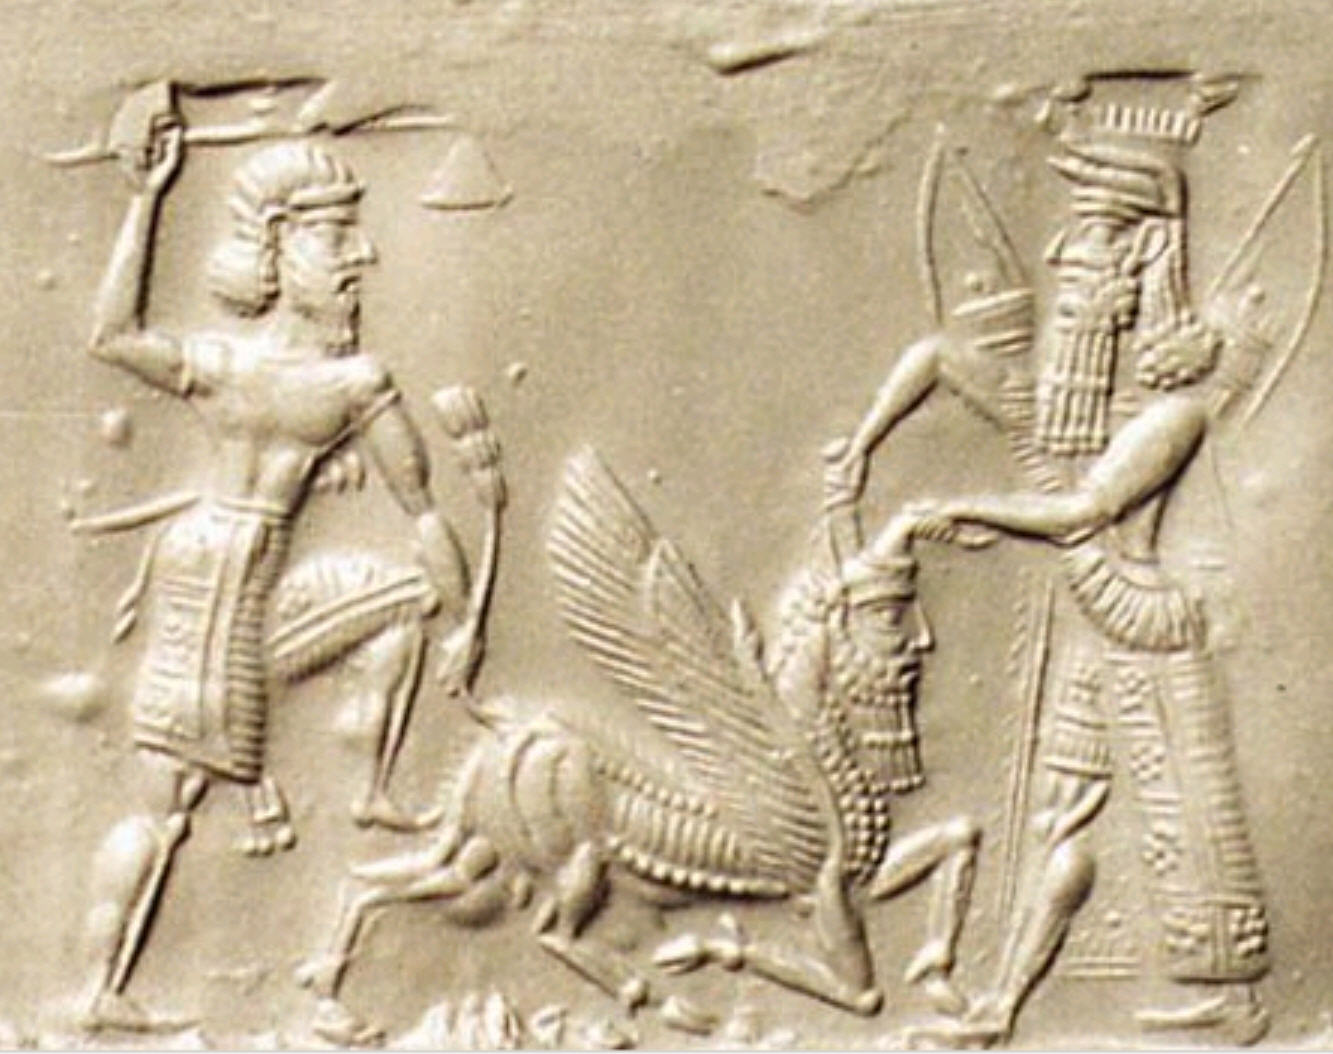 Enkidu and Gilgamesh Slaying the Bull of Heaven